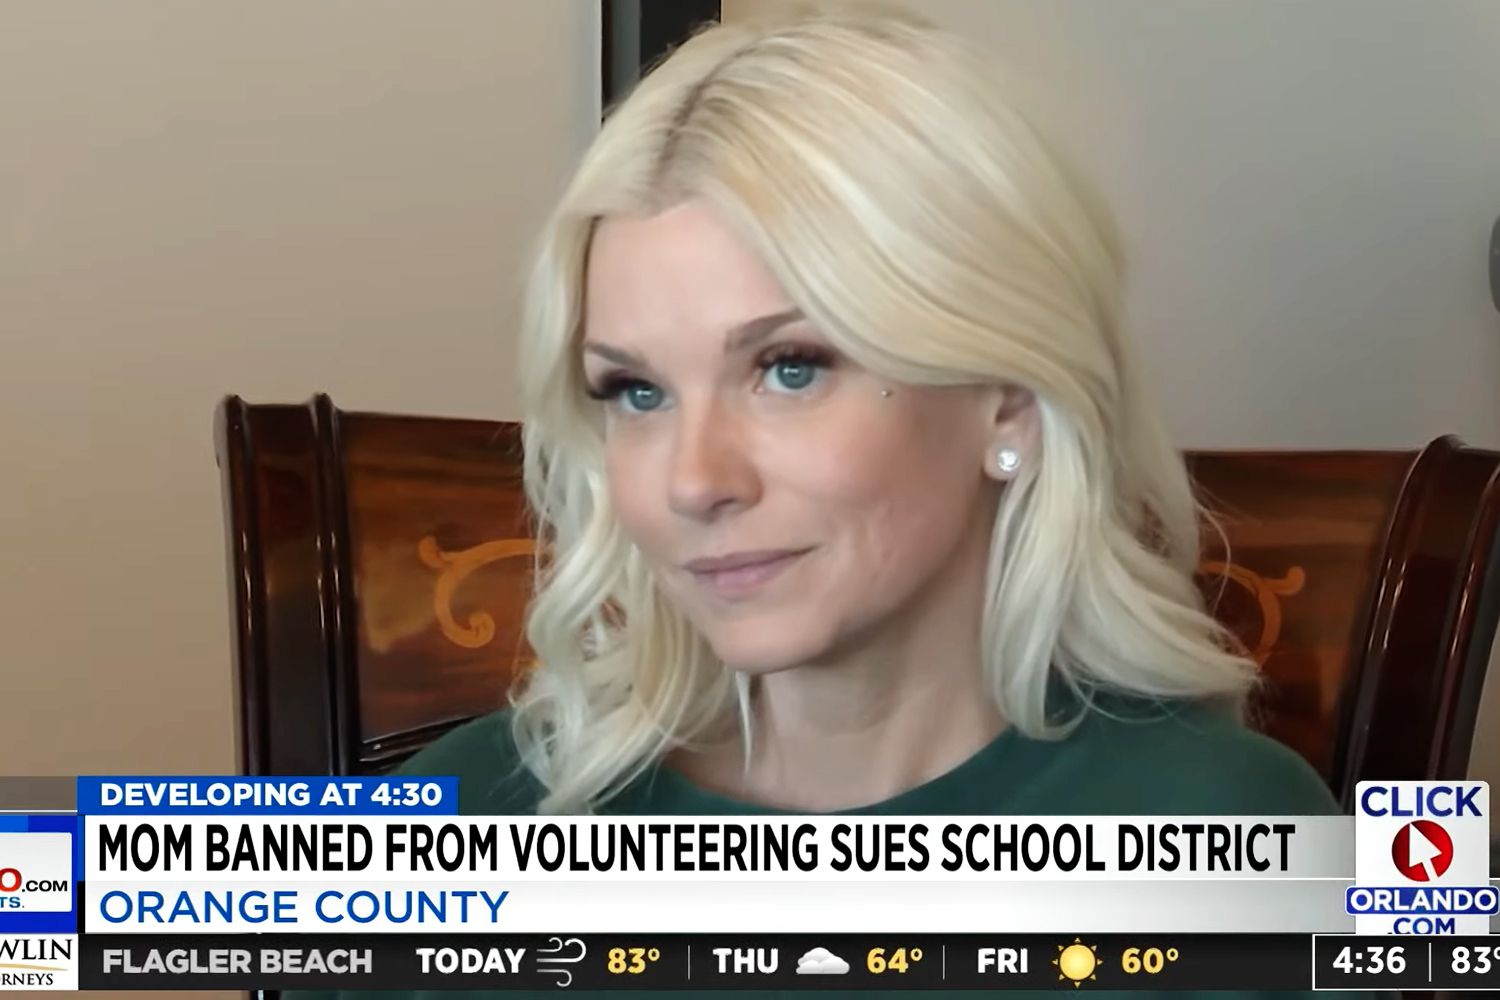 Florida Mutter von 2 verklagt, nachdem sie angeblich wegen OnlyFans-Kontos von der Schule der Söhne verbannt wurde